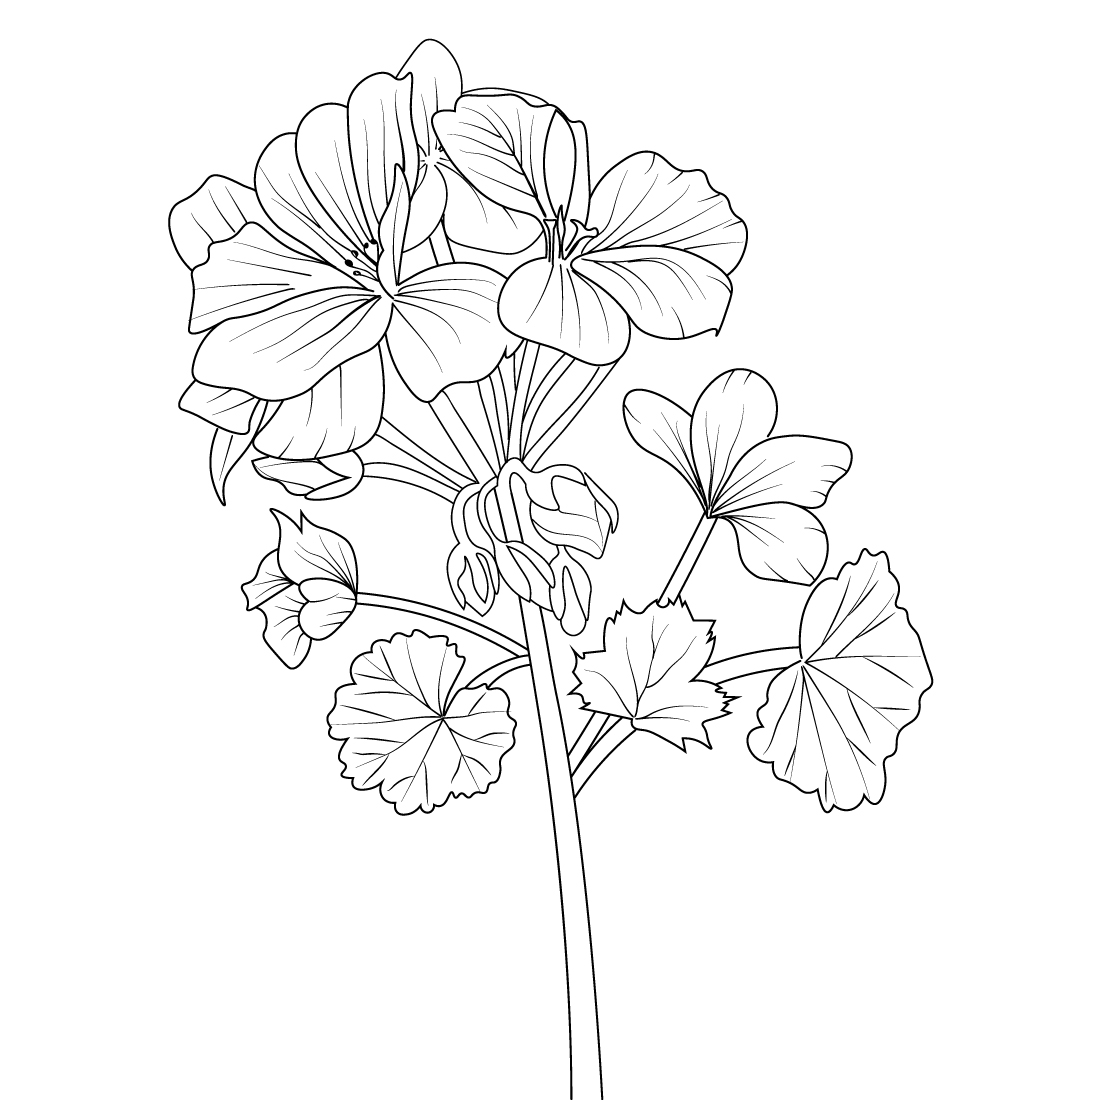 Geranium flower line art, botanical geranium drawing, watercolor botanical geranium drawing, Pelargonium quercifolium, easy geranium drawing, geranium outline drawing cover image.